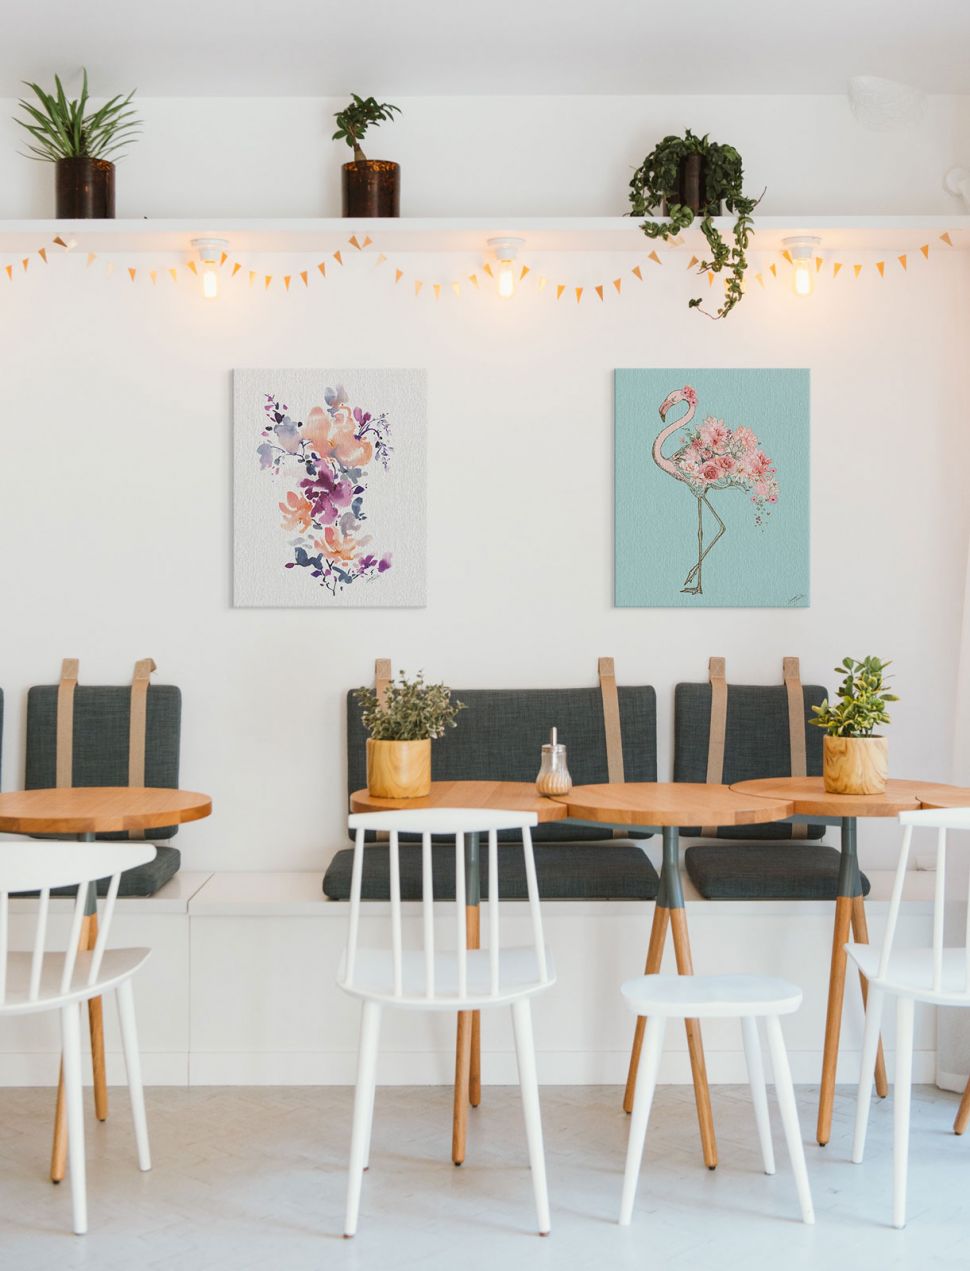 Obraz na płótnie z kwiatami powieszony na białej ścianie w kawiarni